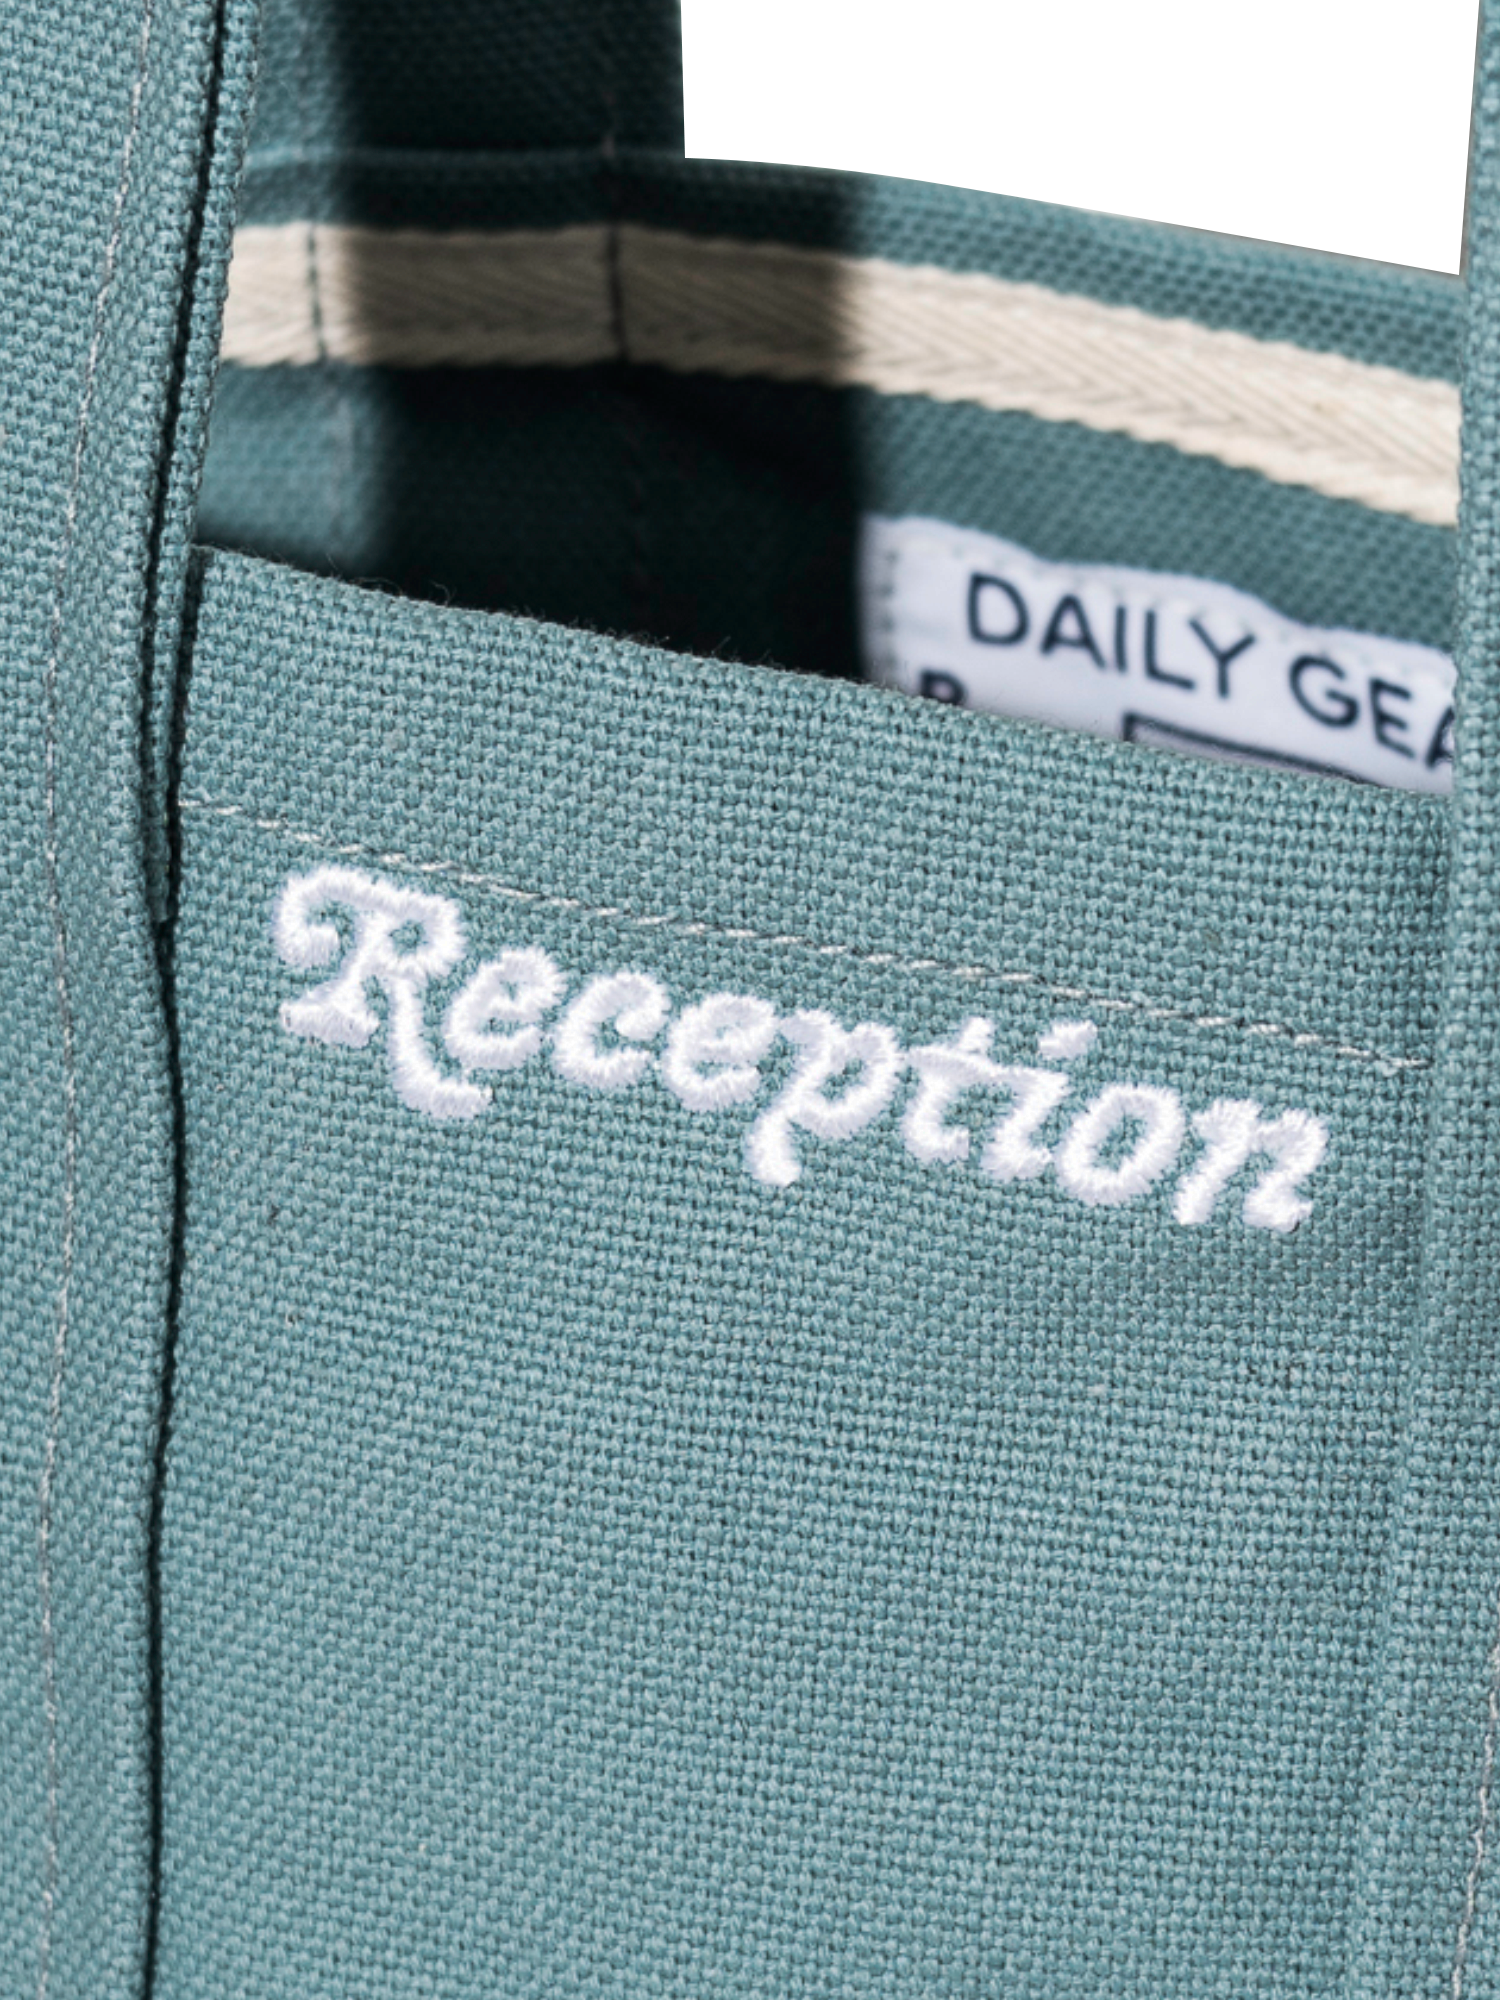 Reception - Accessory - Shopper - Bag - Dusty Green